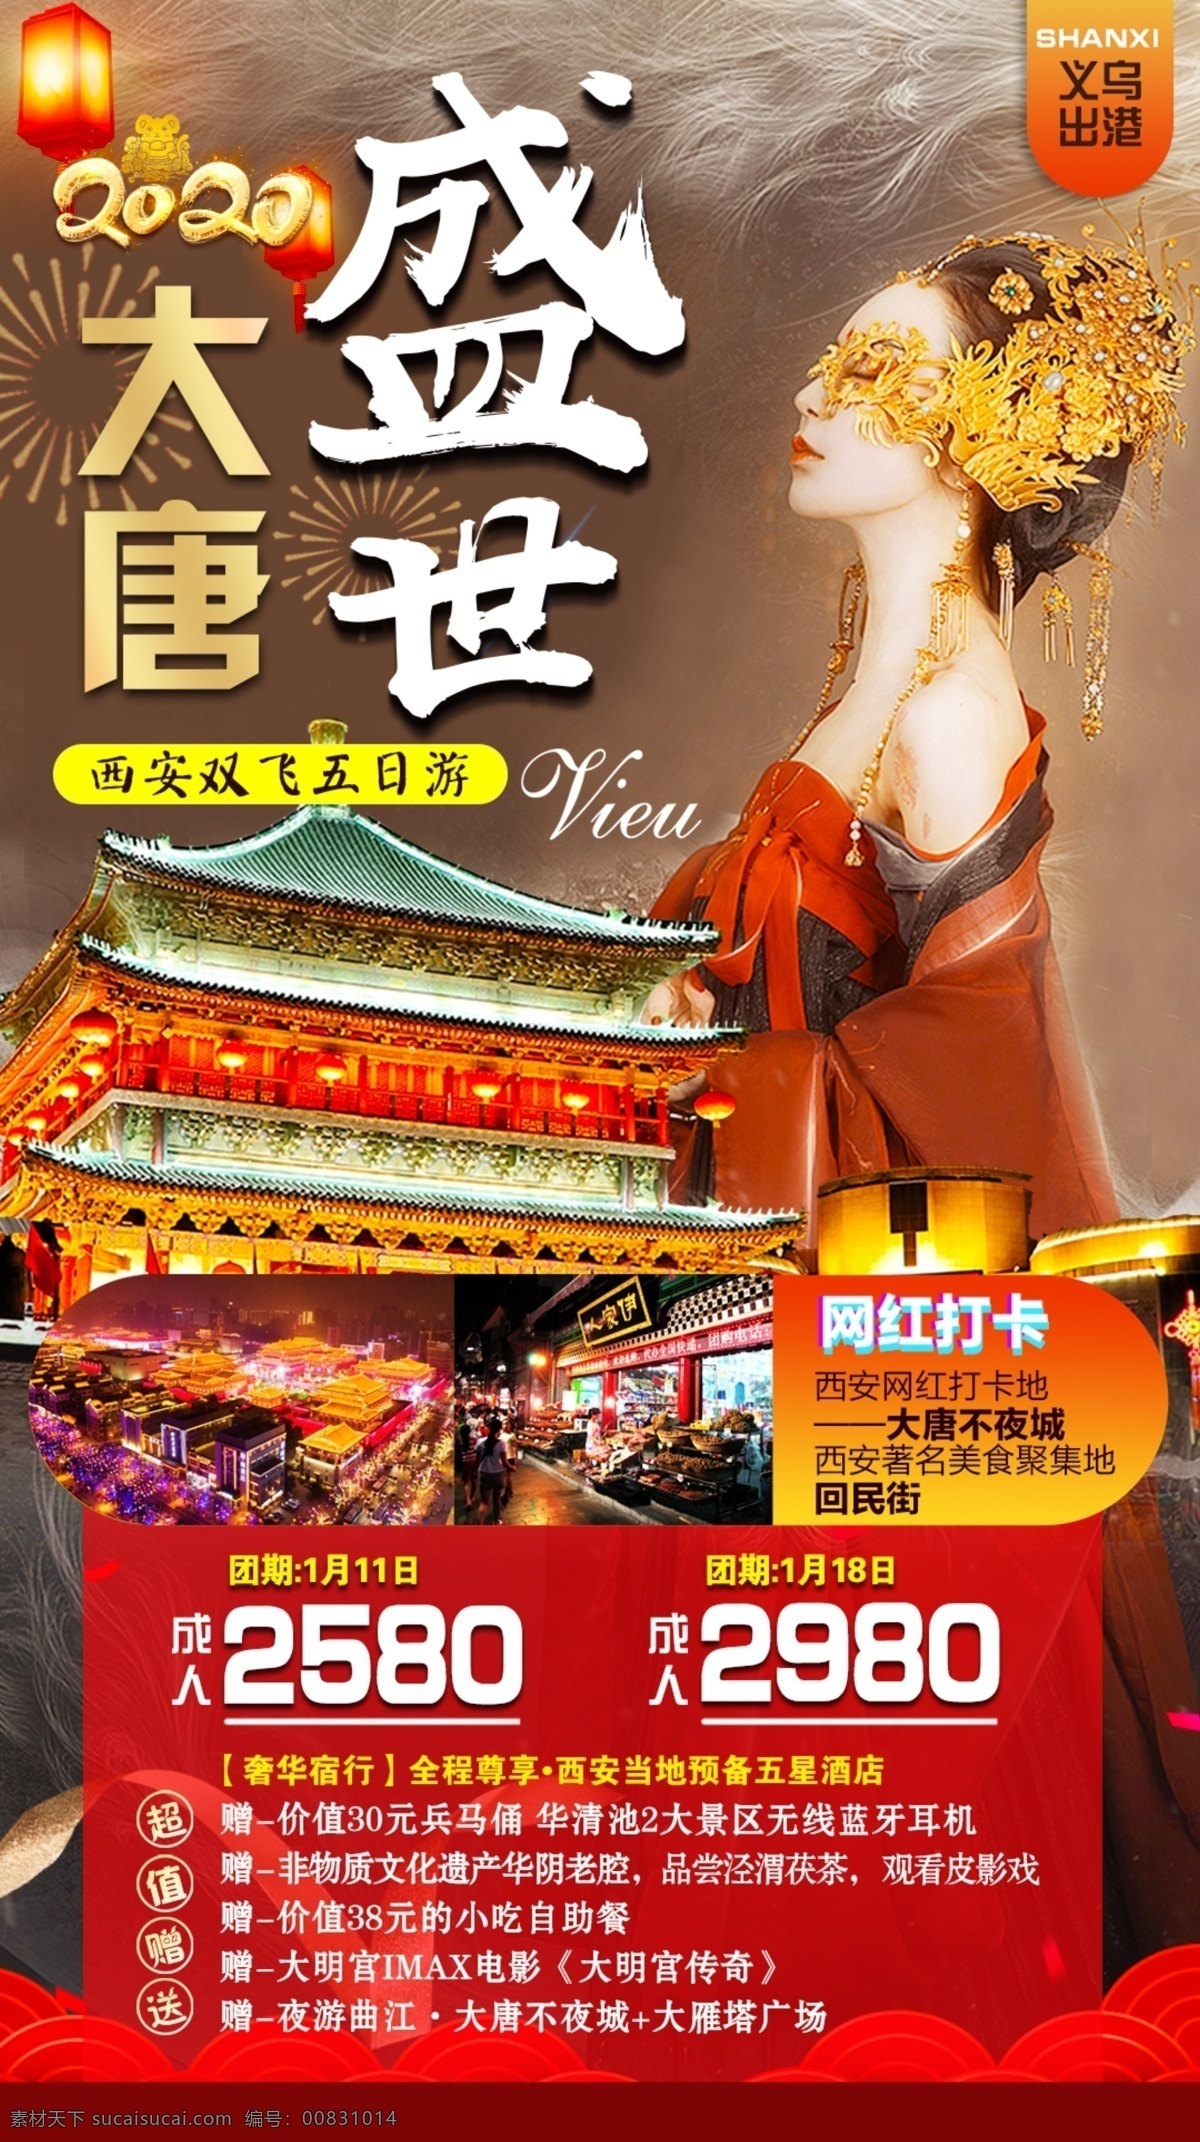 西安 2020 海报 旅游广告设计 旅游海报设计